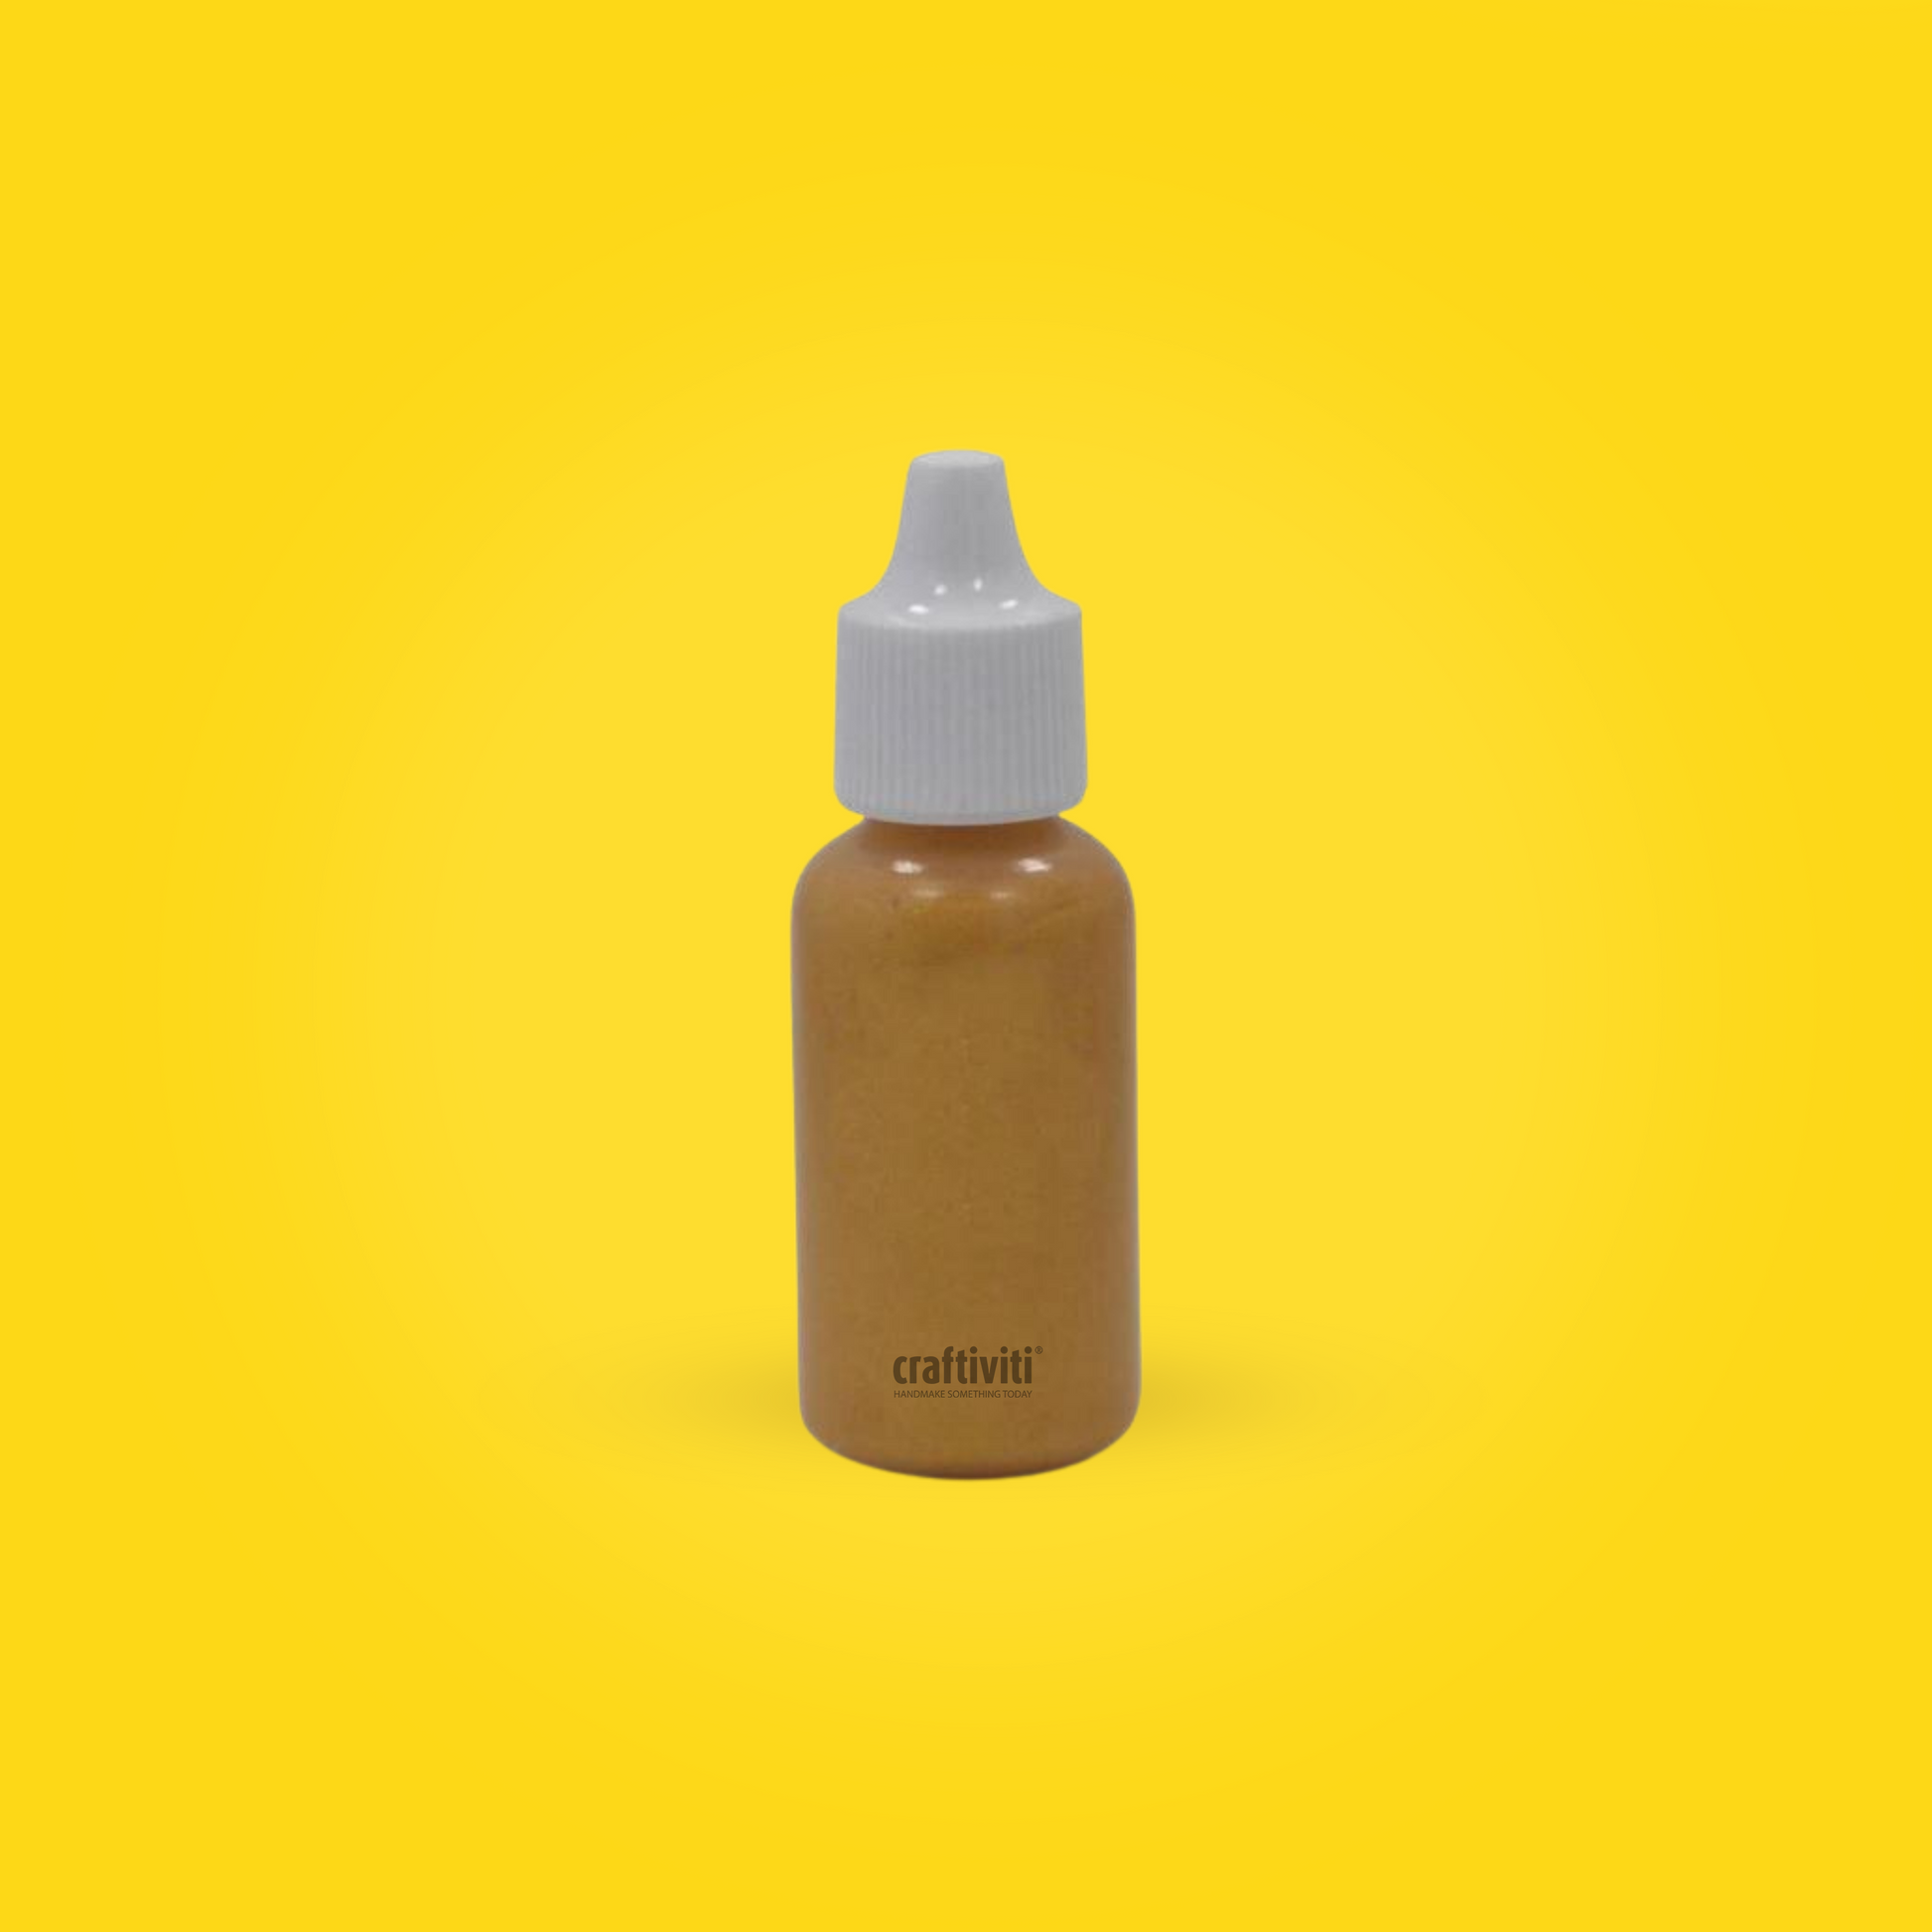 Liquid Soap Pigment 15ml - Radiant Gold